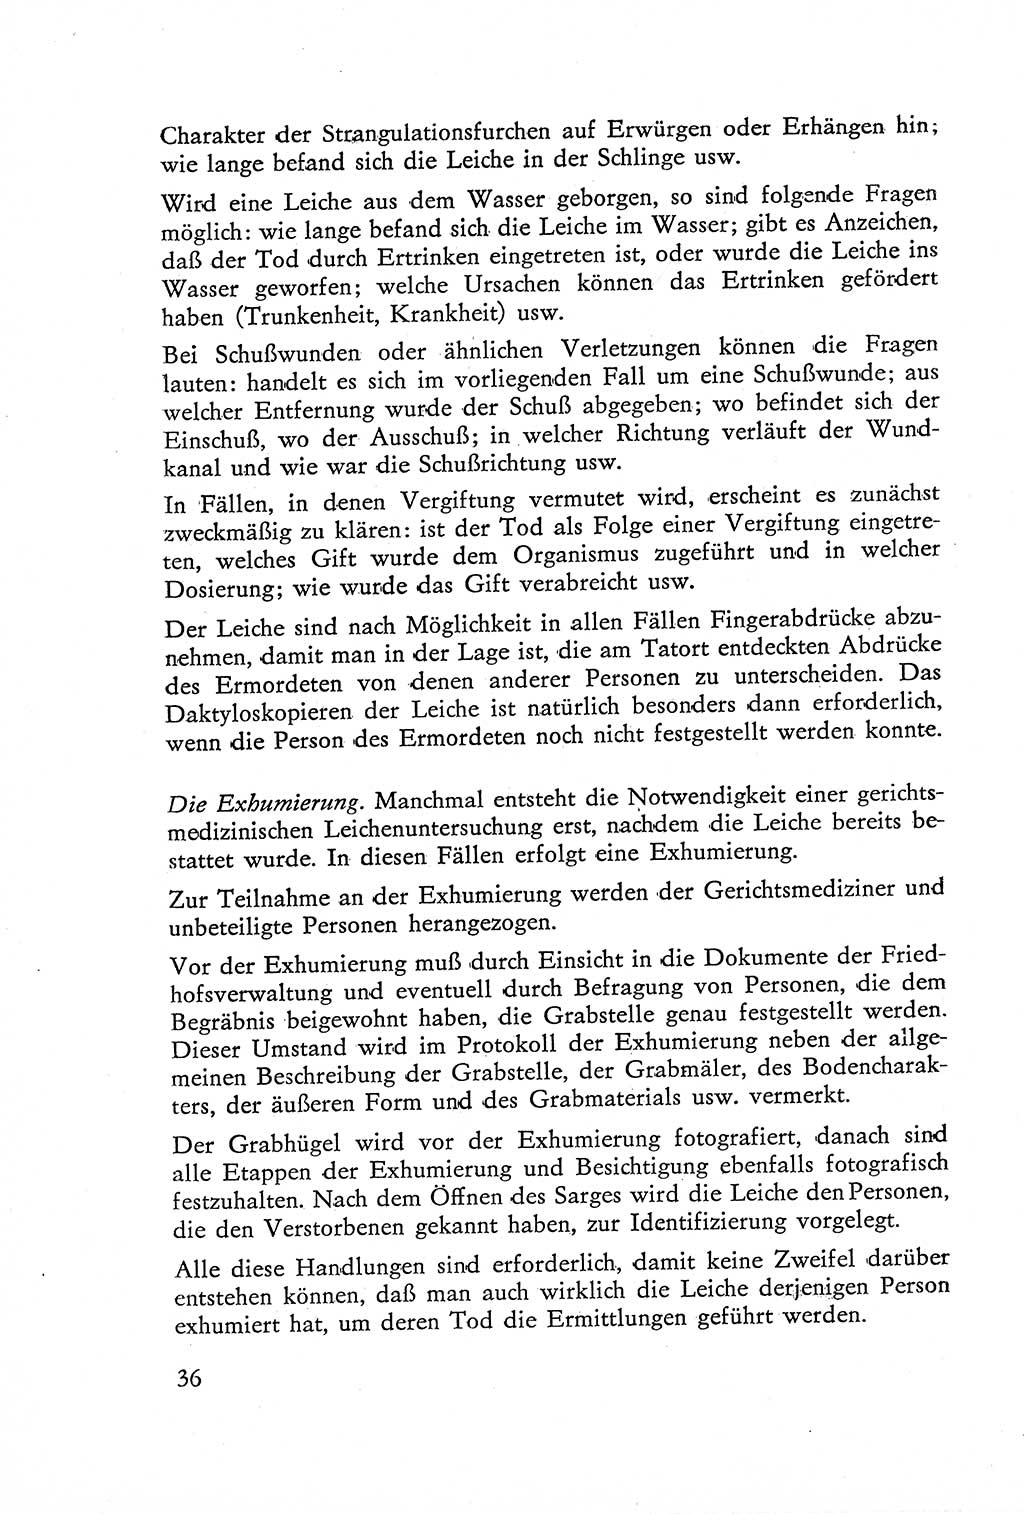 Die Untersuchung einzelner Verbrechensarten [Deutsche Demokratische Republik (DDR)] 1960, Seite 36 (Unters. Verbr.-Art. DDR 1960, S. 36)